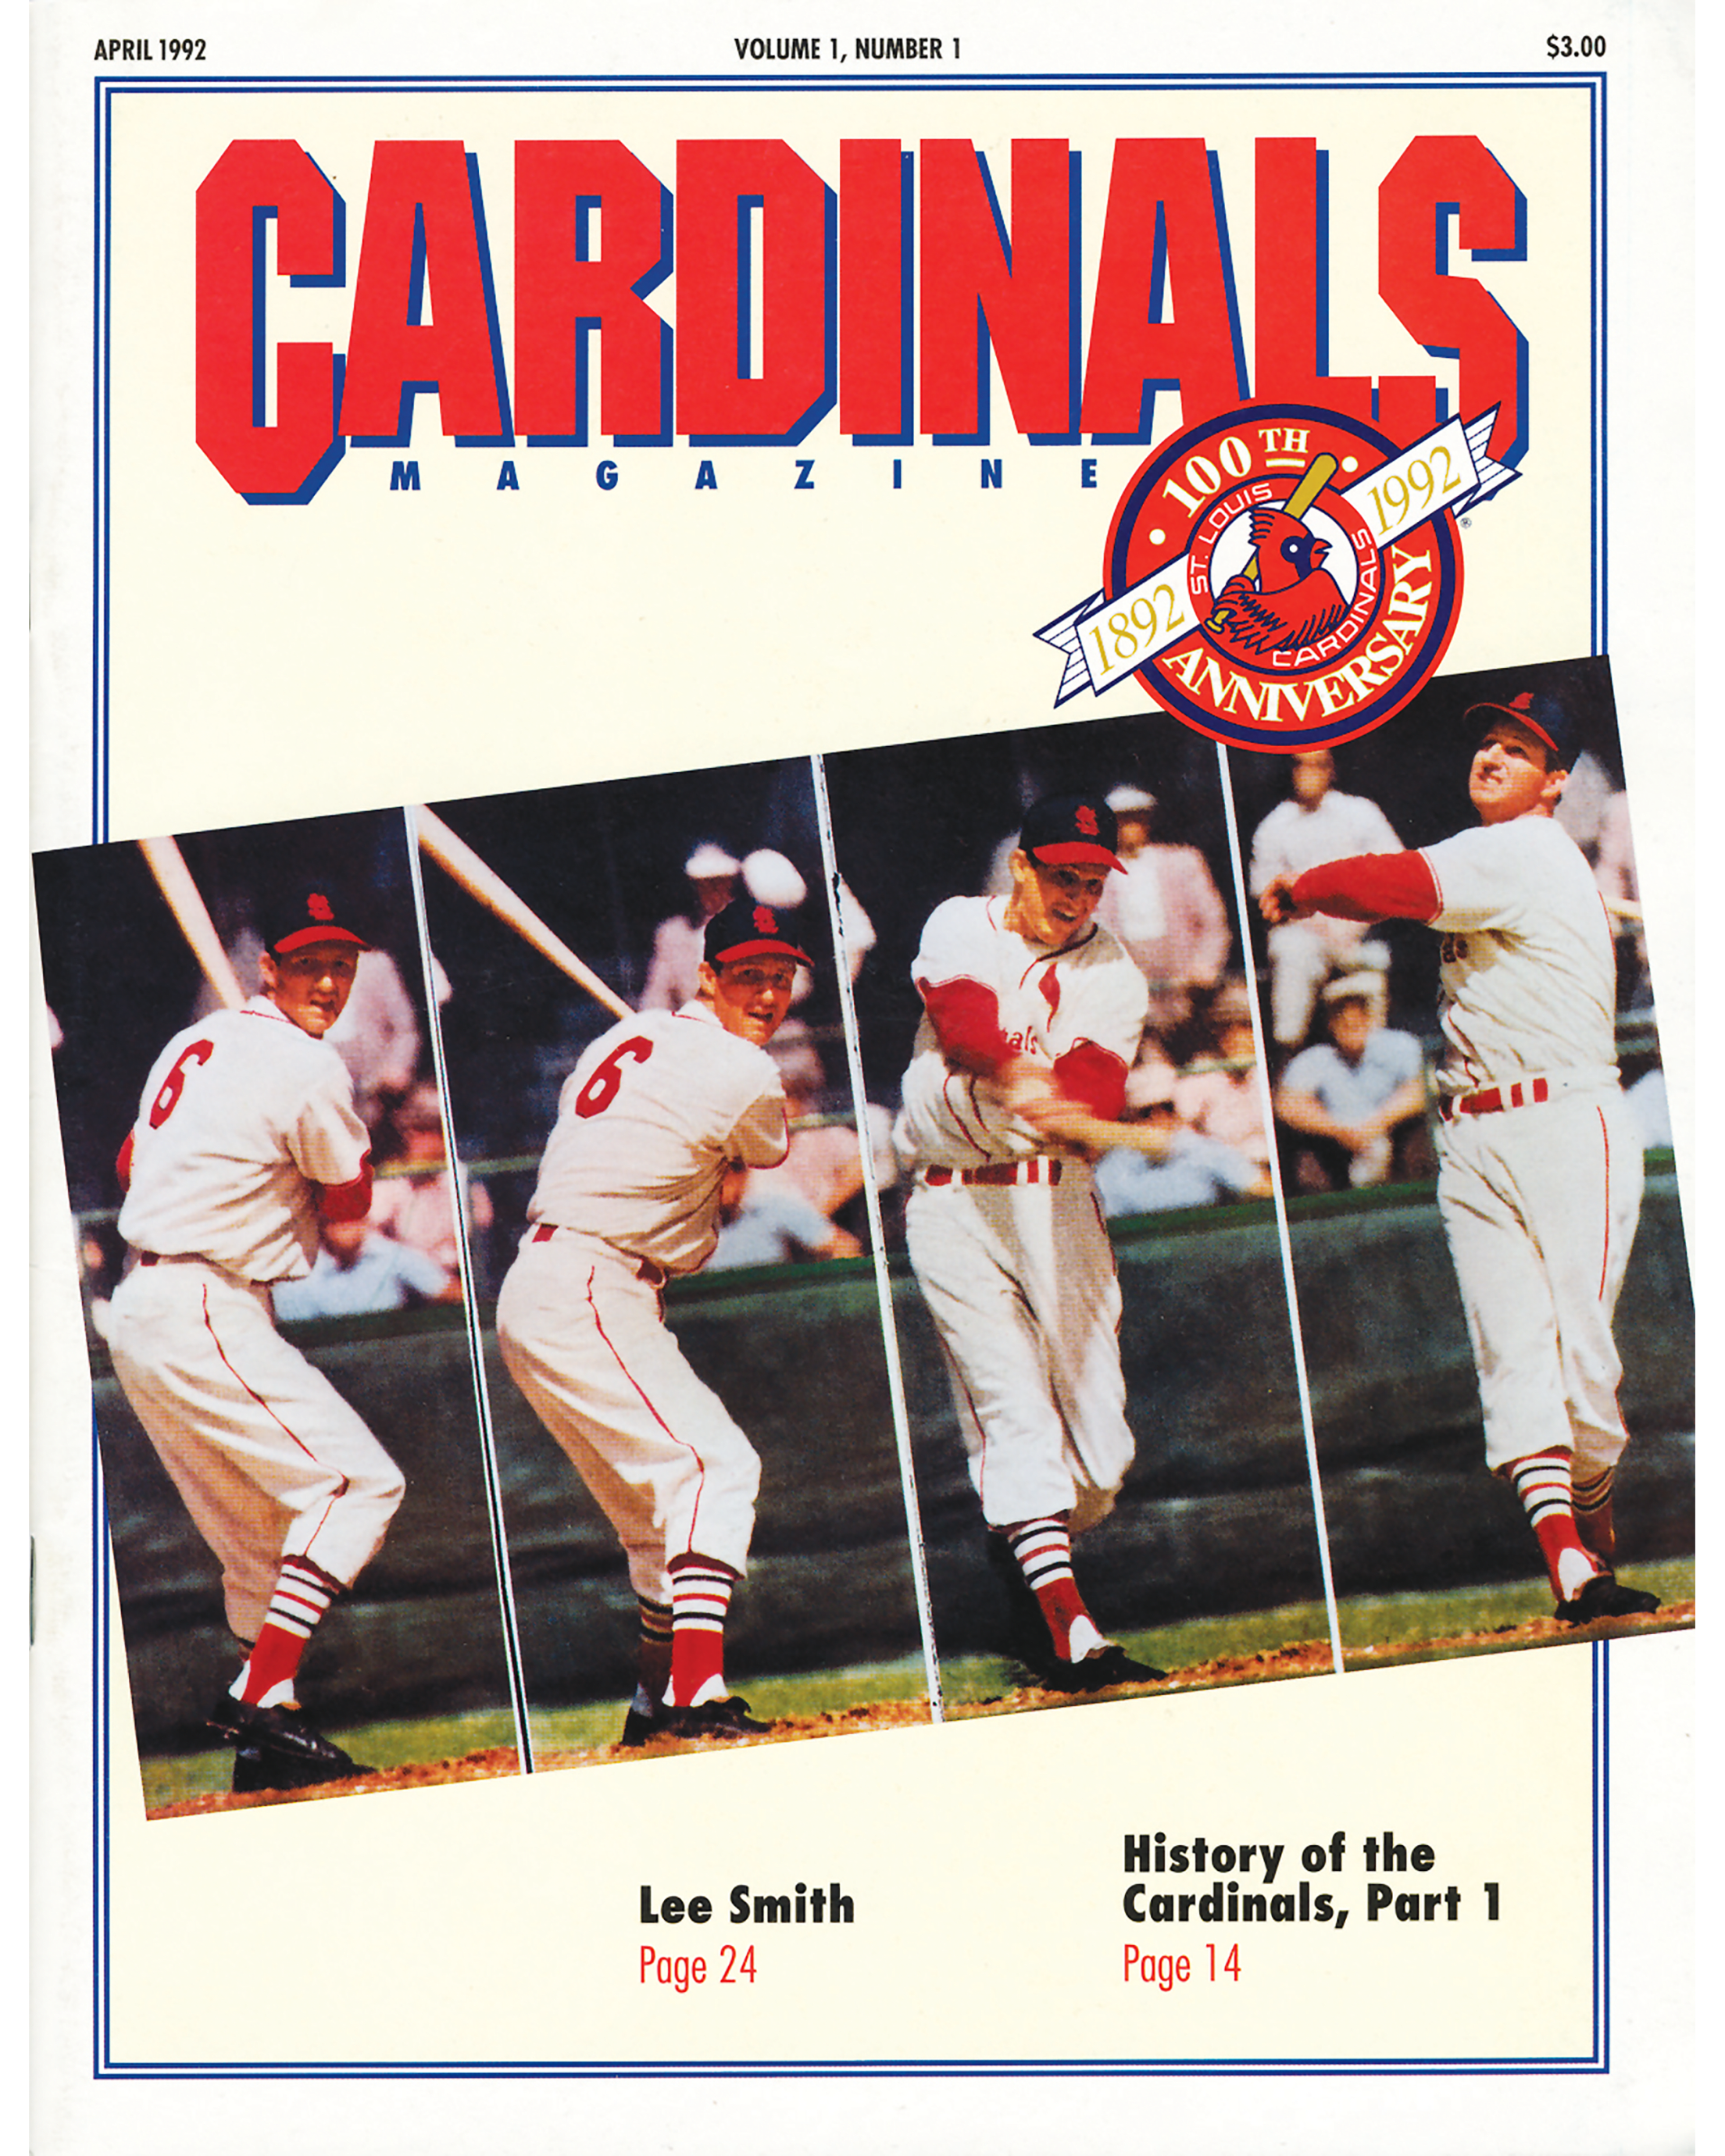 St. Louis Cardinals Vintage Memorabilia for sale